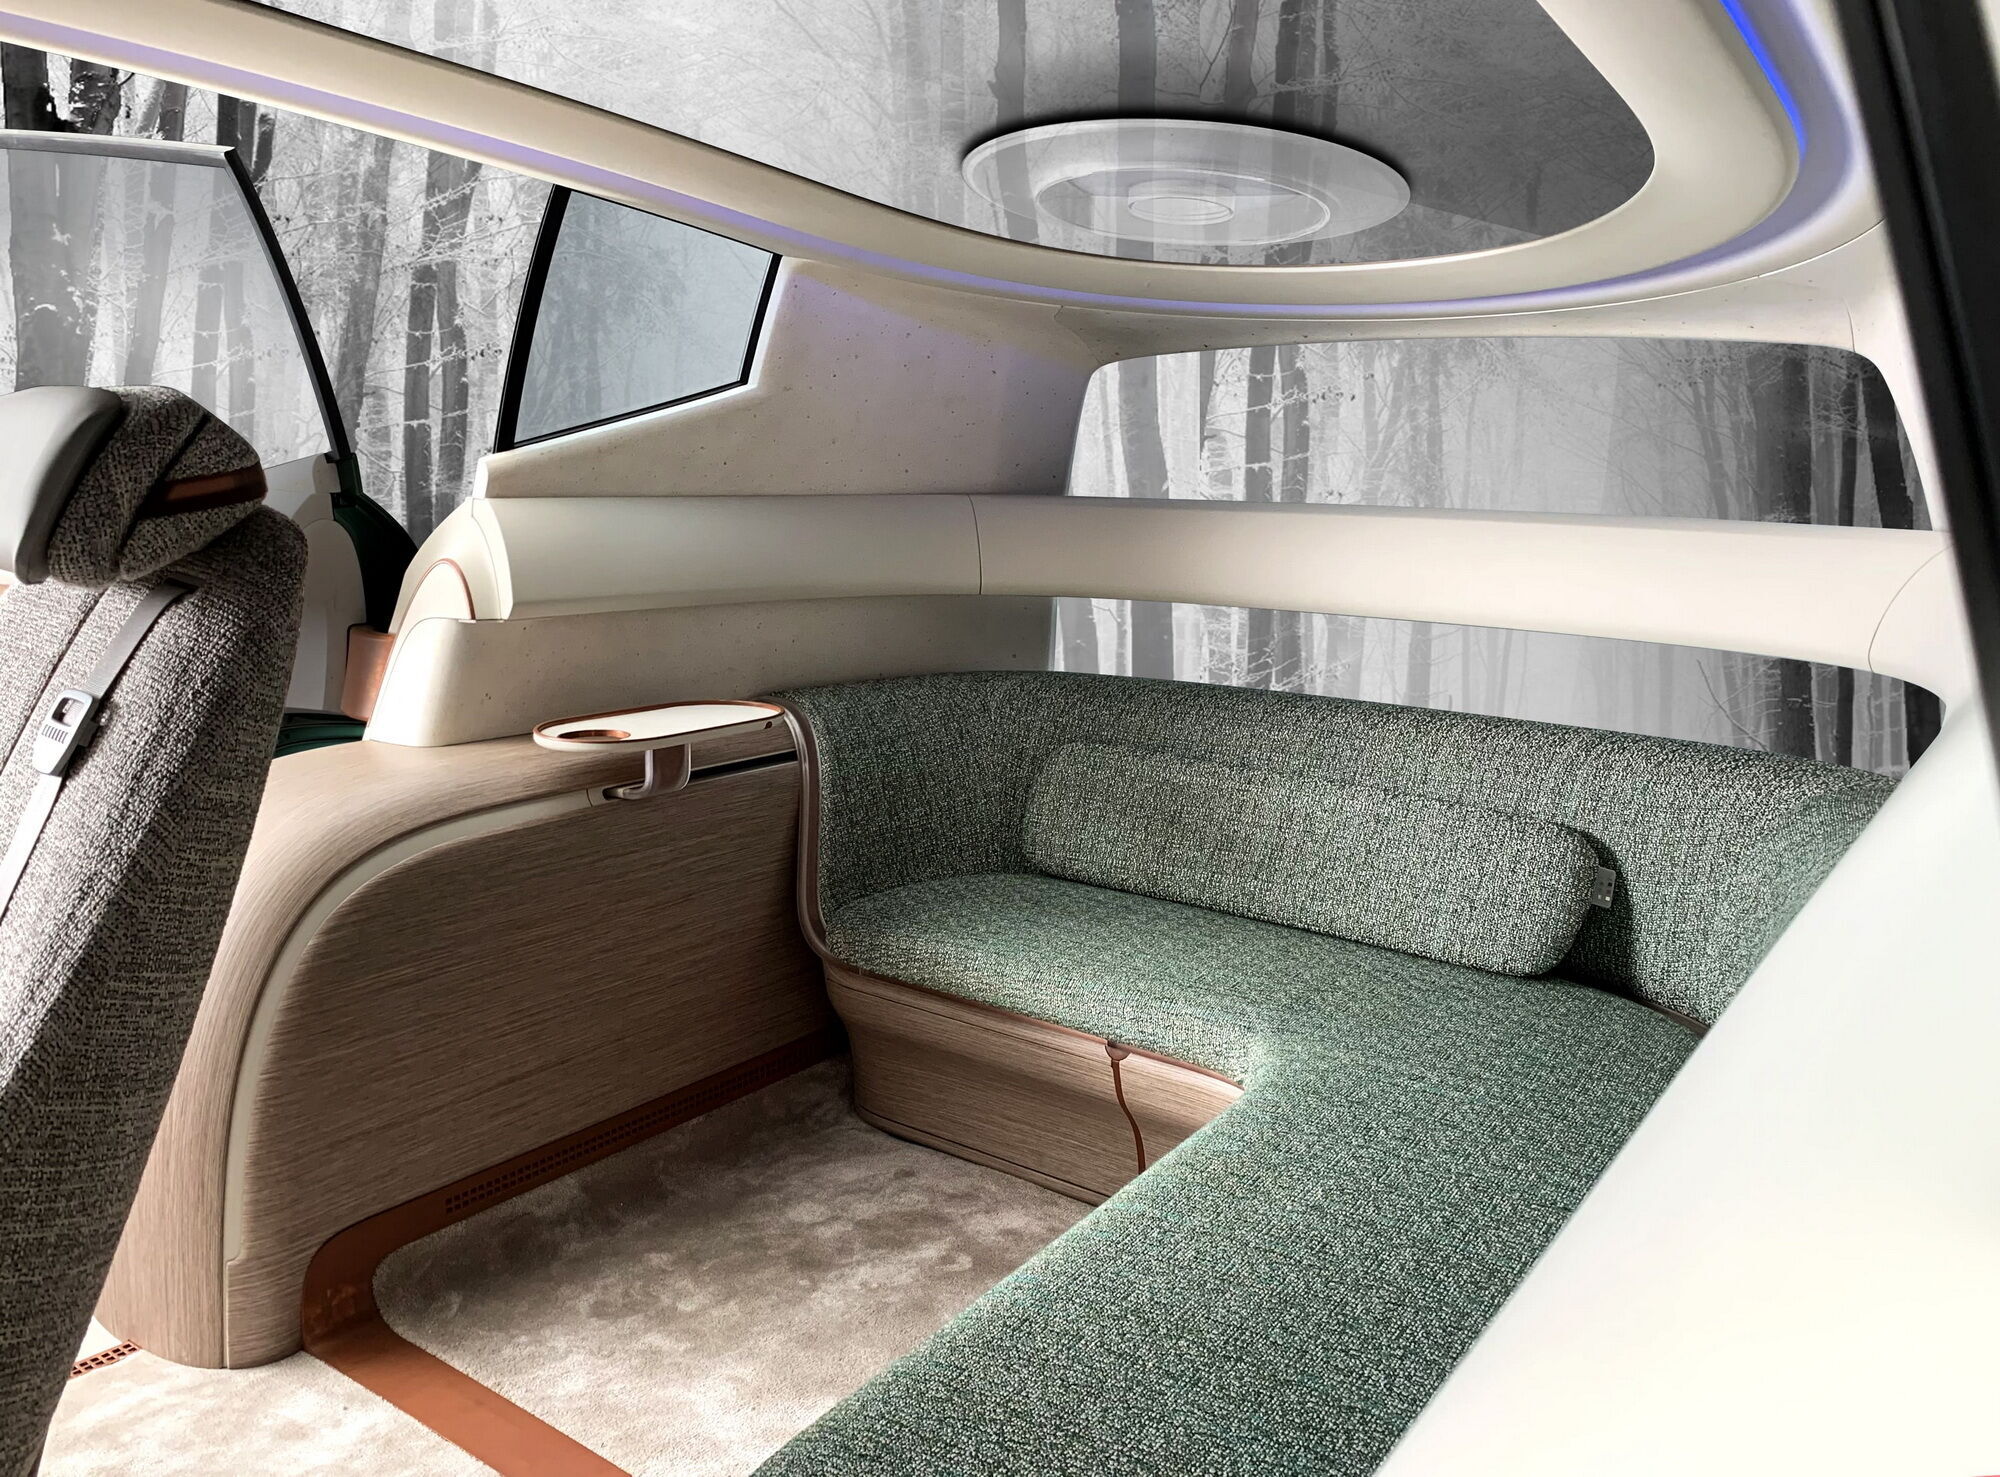 Два индивидуальных кресла можно вращать на 360 градусов, а в задней части разместили уютный диван